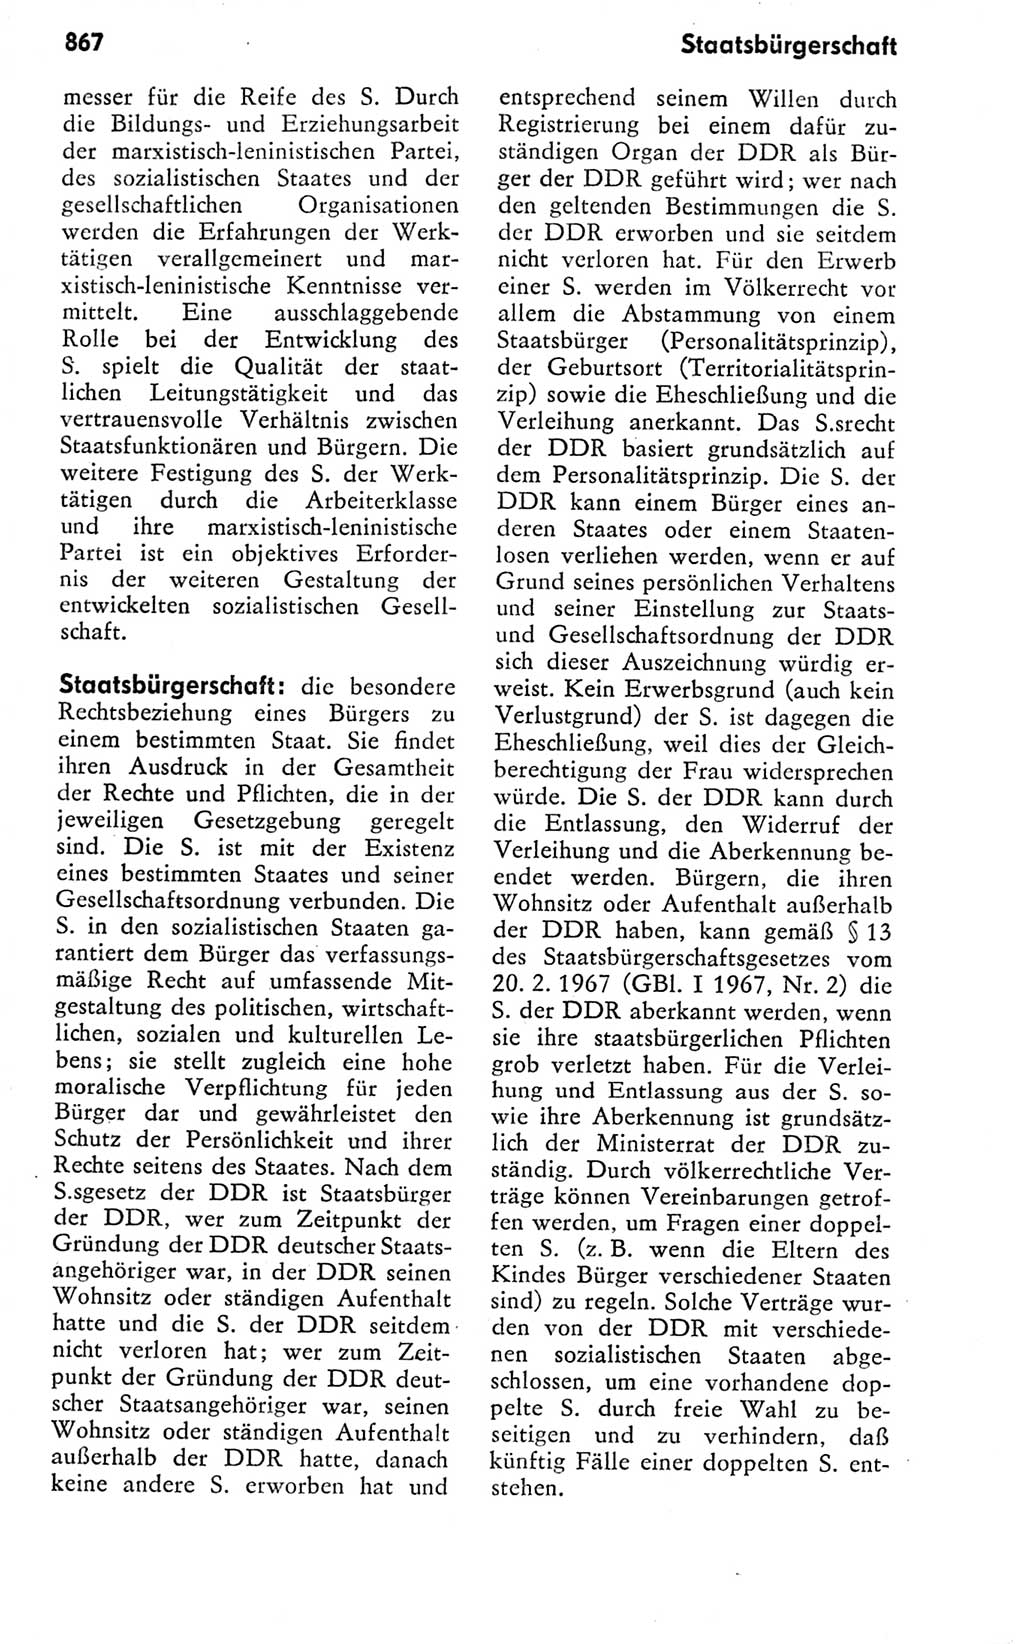 Kleines politisches Wörterbuch [Deutsche Demokratische Republik (DDR)] 1978, Seite 867 (Kl. pol. Wb. DDR 1978, S. 867)